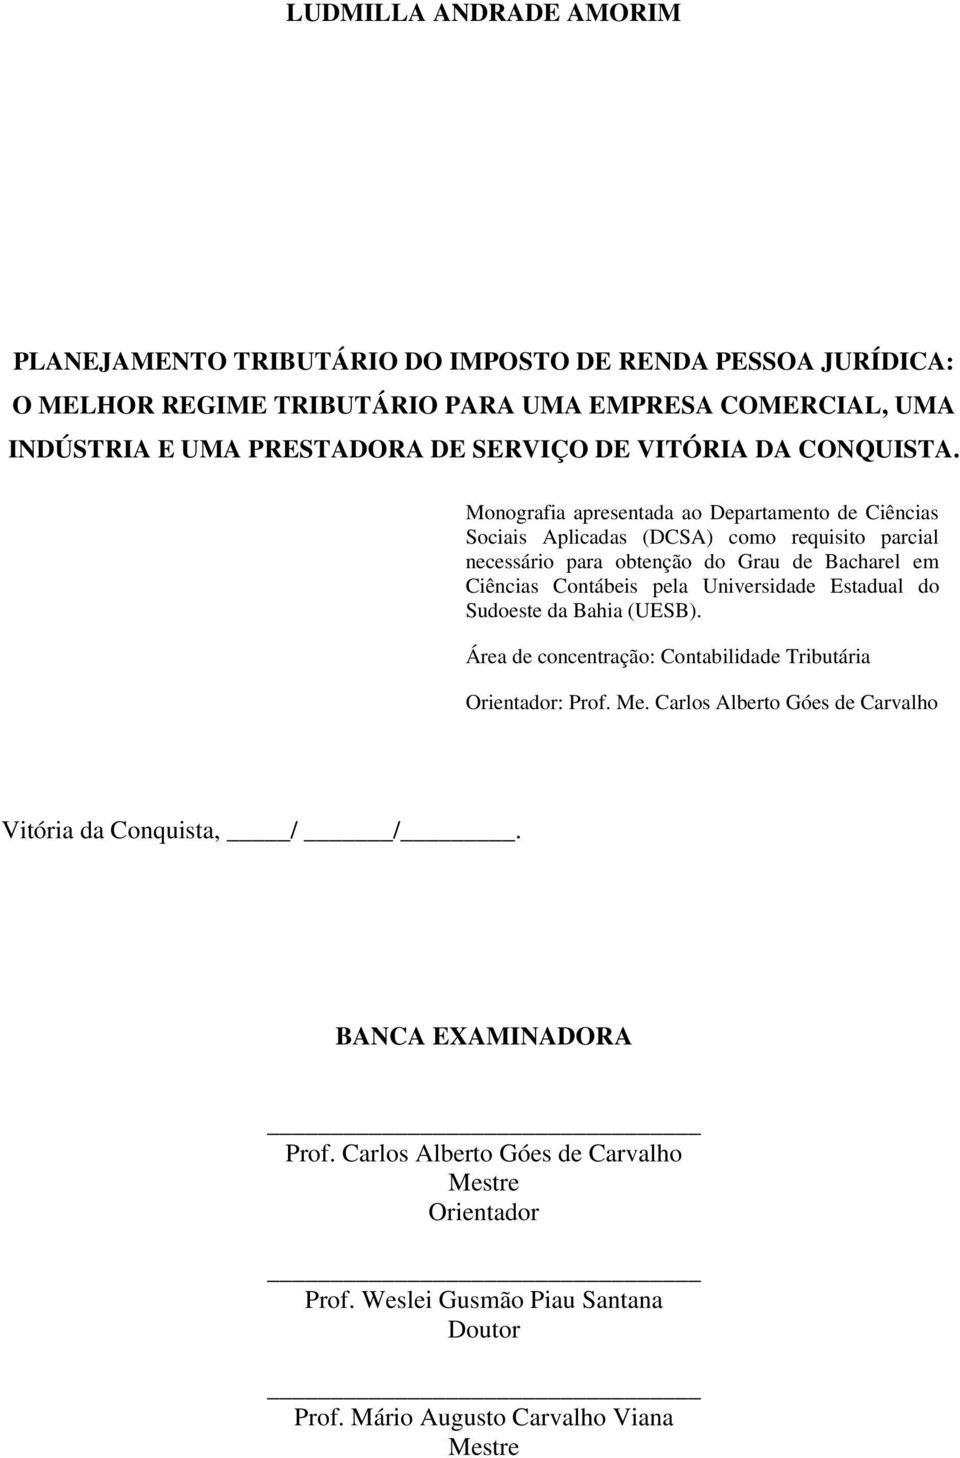 Monografia apresentada ao Departamento de Ciências Sociais Aplicadas (DCSA) como requisito parcial necessário para obtenção do Grau de Bacharel em Ciências Contábeis pela